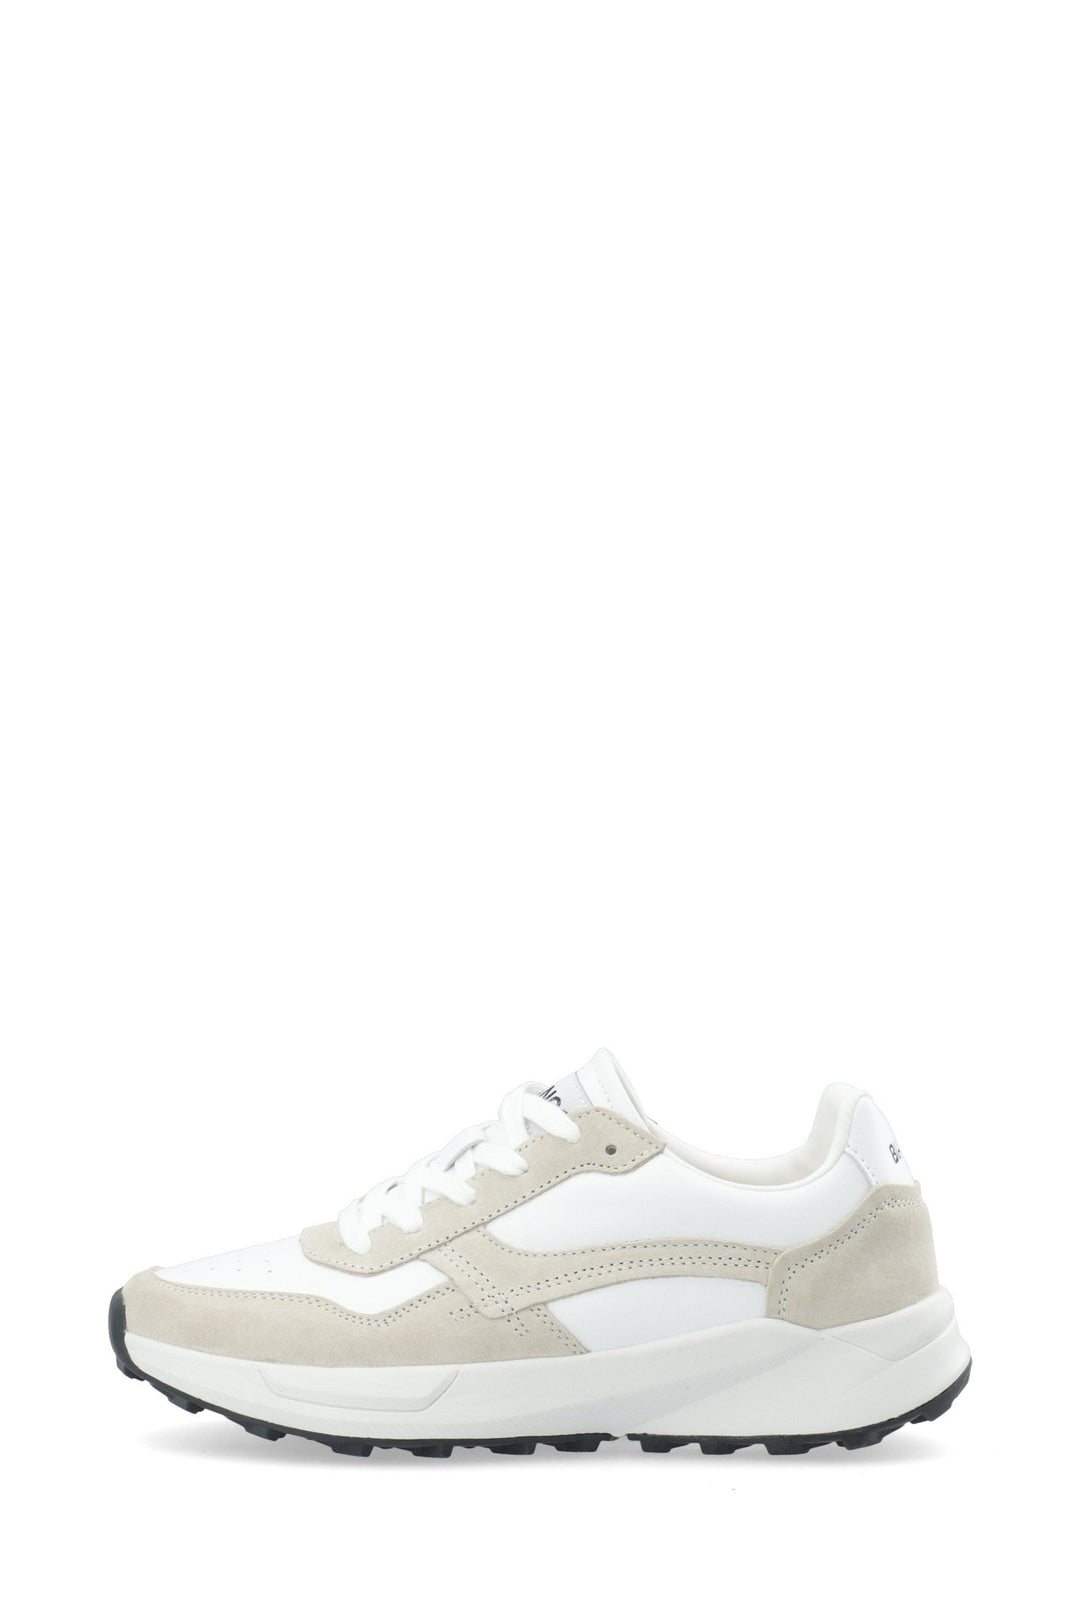 Bialucy Sneakers White | Sko | Smuk - Dameklær på nett